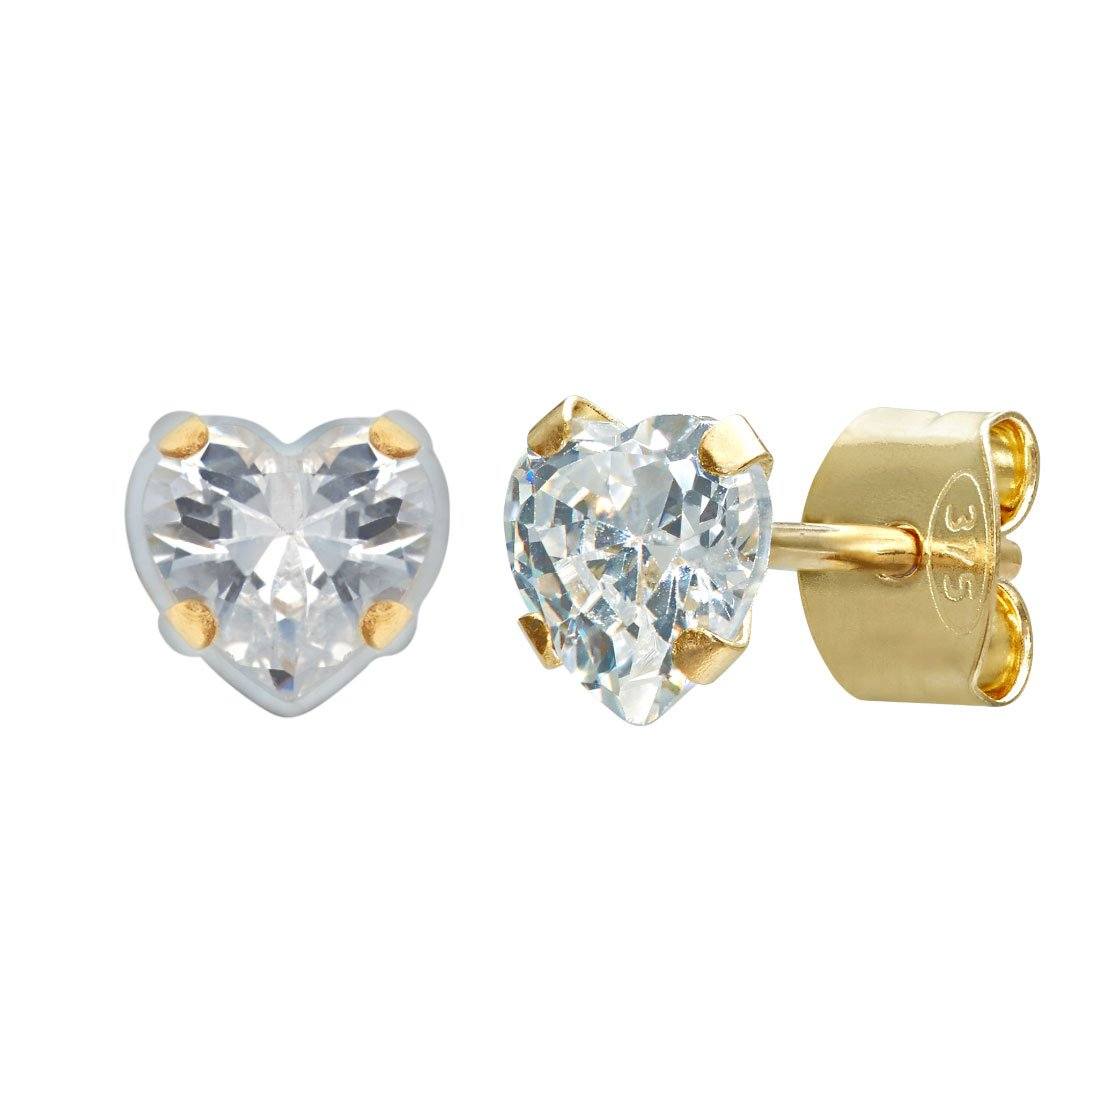 Cubic Zirconia Heart Earrings in 9ct Yellow Gold Earrings Bevilles 